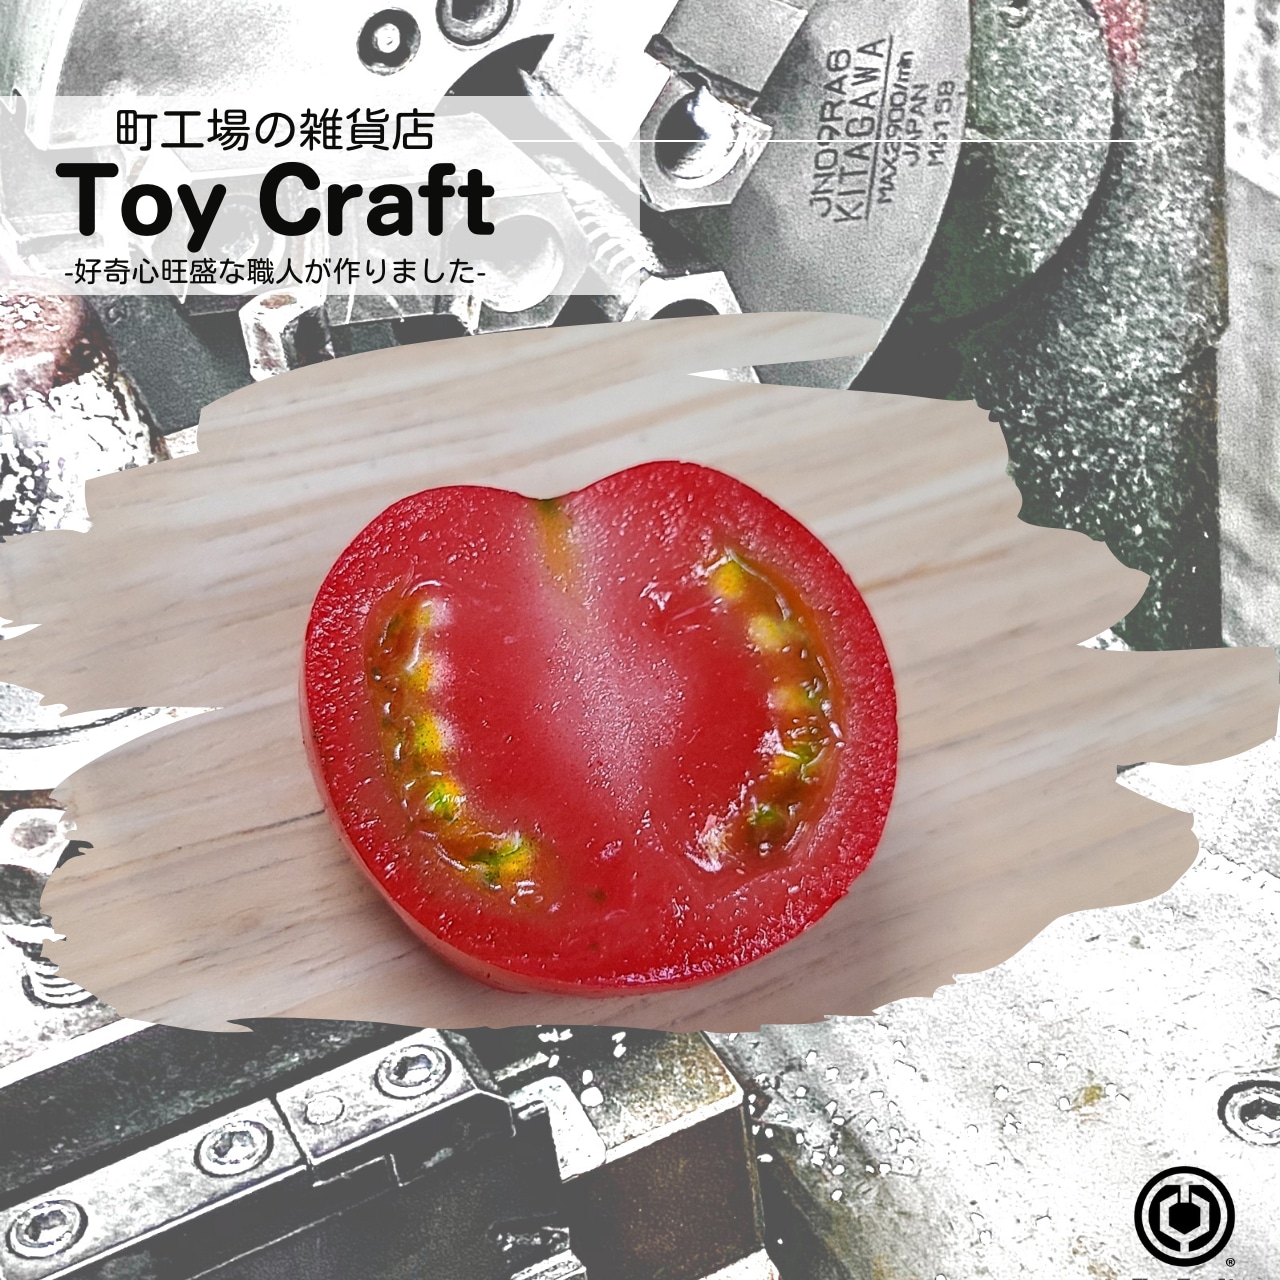 ToyChuck®-tomato-